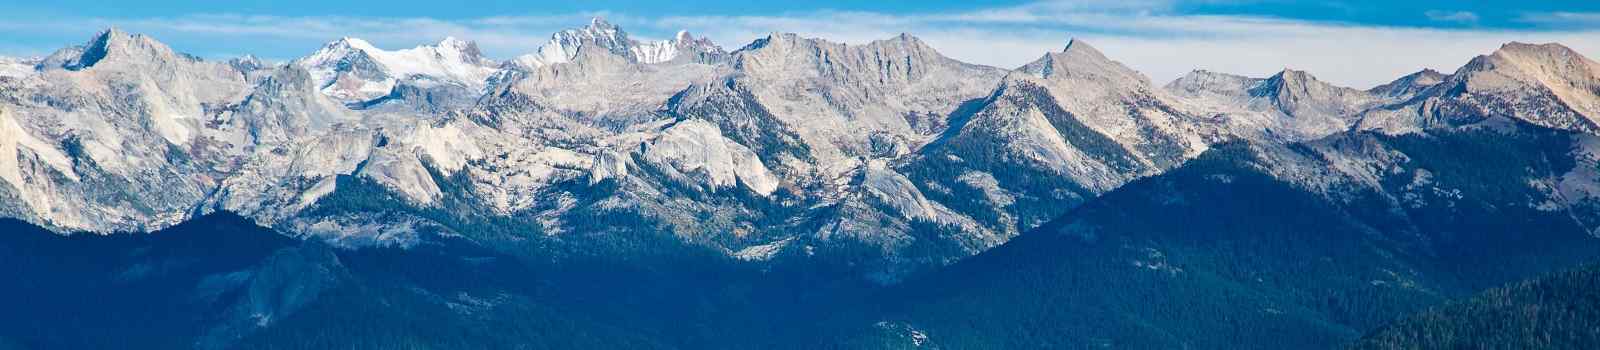 SEQUOIA-NATIONALPARK -Kalifornien Blick vom MoroRock in Sequoia und KingsCanyon 66519235